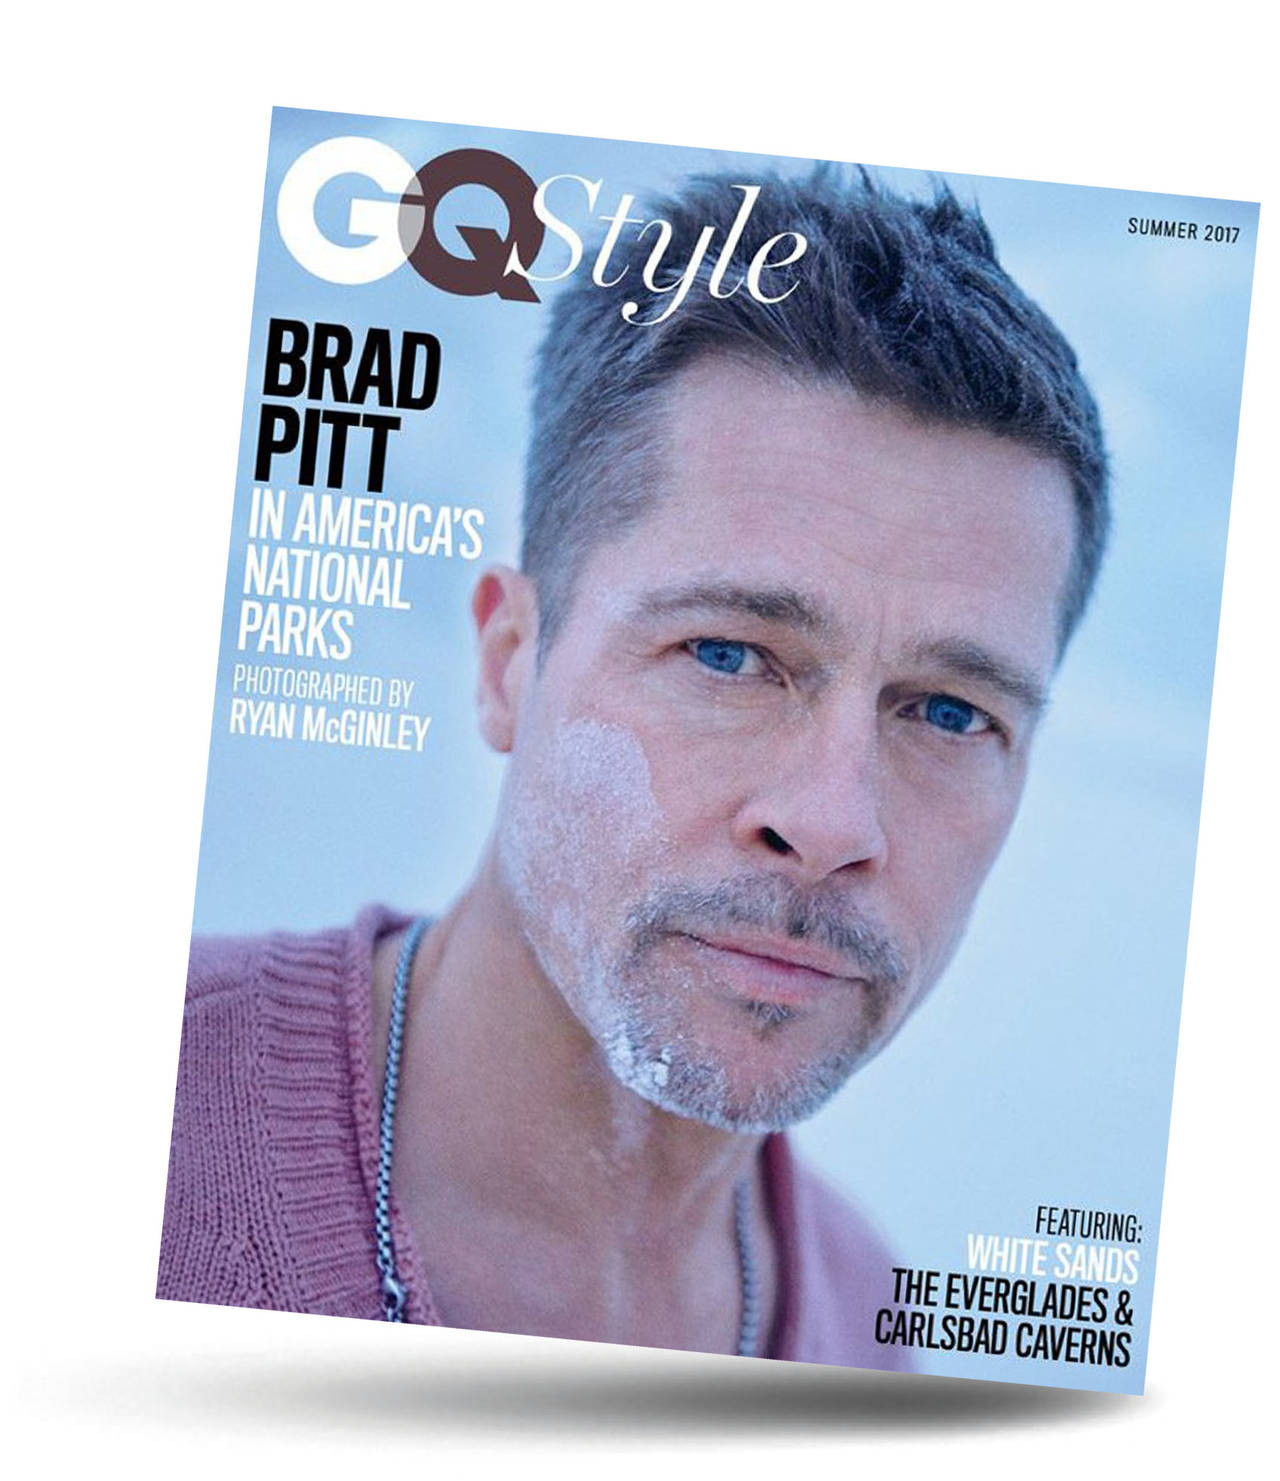 Adicción. El actor Brad Pitt admitió para una entrevista con GQ que dejó de beber tras divorciarse de Angelina Jolie. (ESPECIAL)